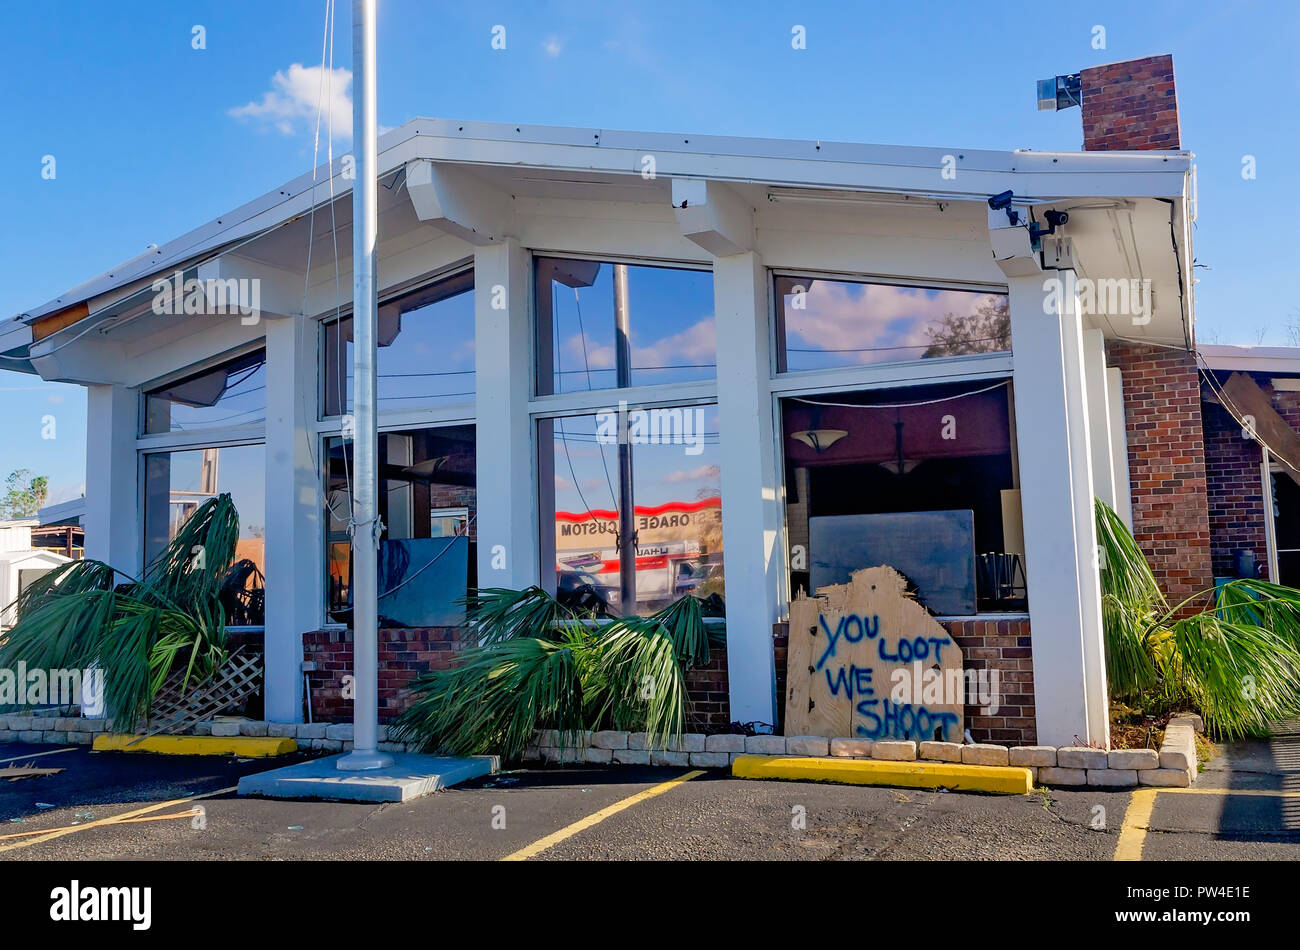 Un segno esterno imposta Liberty avverte di ladri, "si bottino, abbiamo shoot,", 11 ott. 2018, nella città di Panama, Florida. Foto Stock